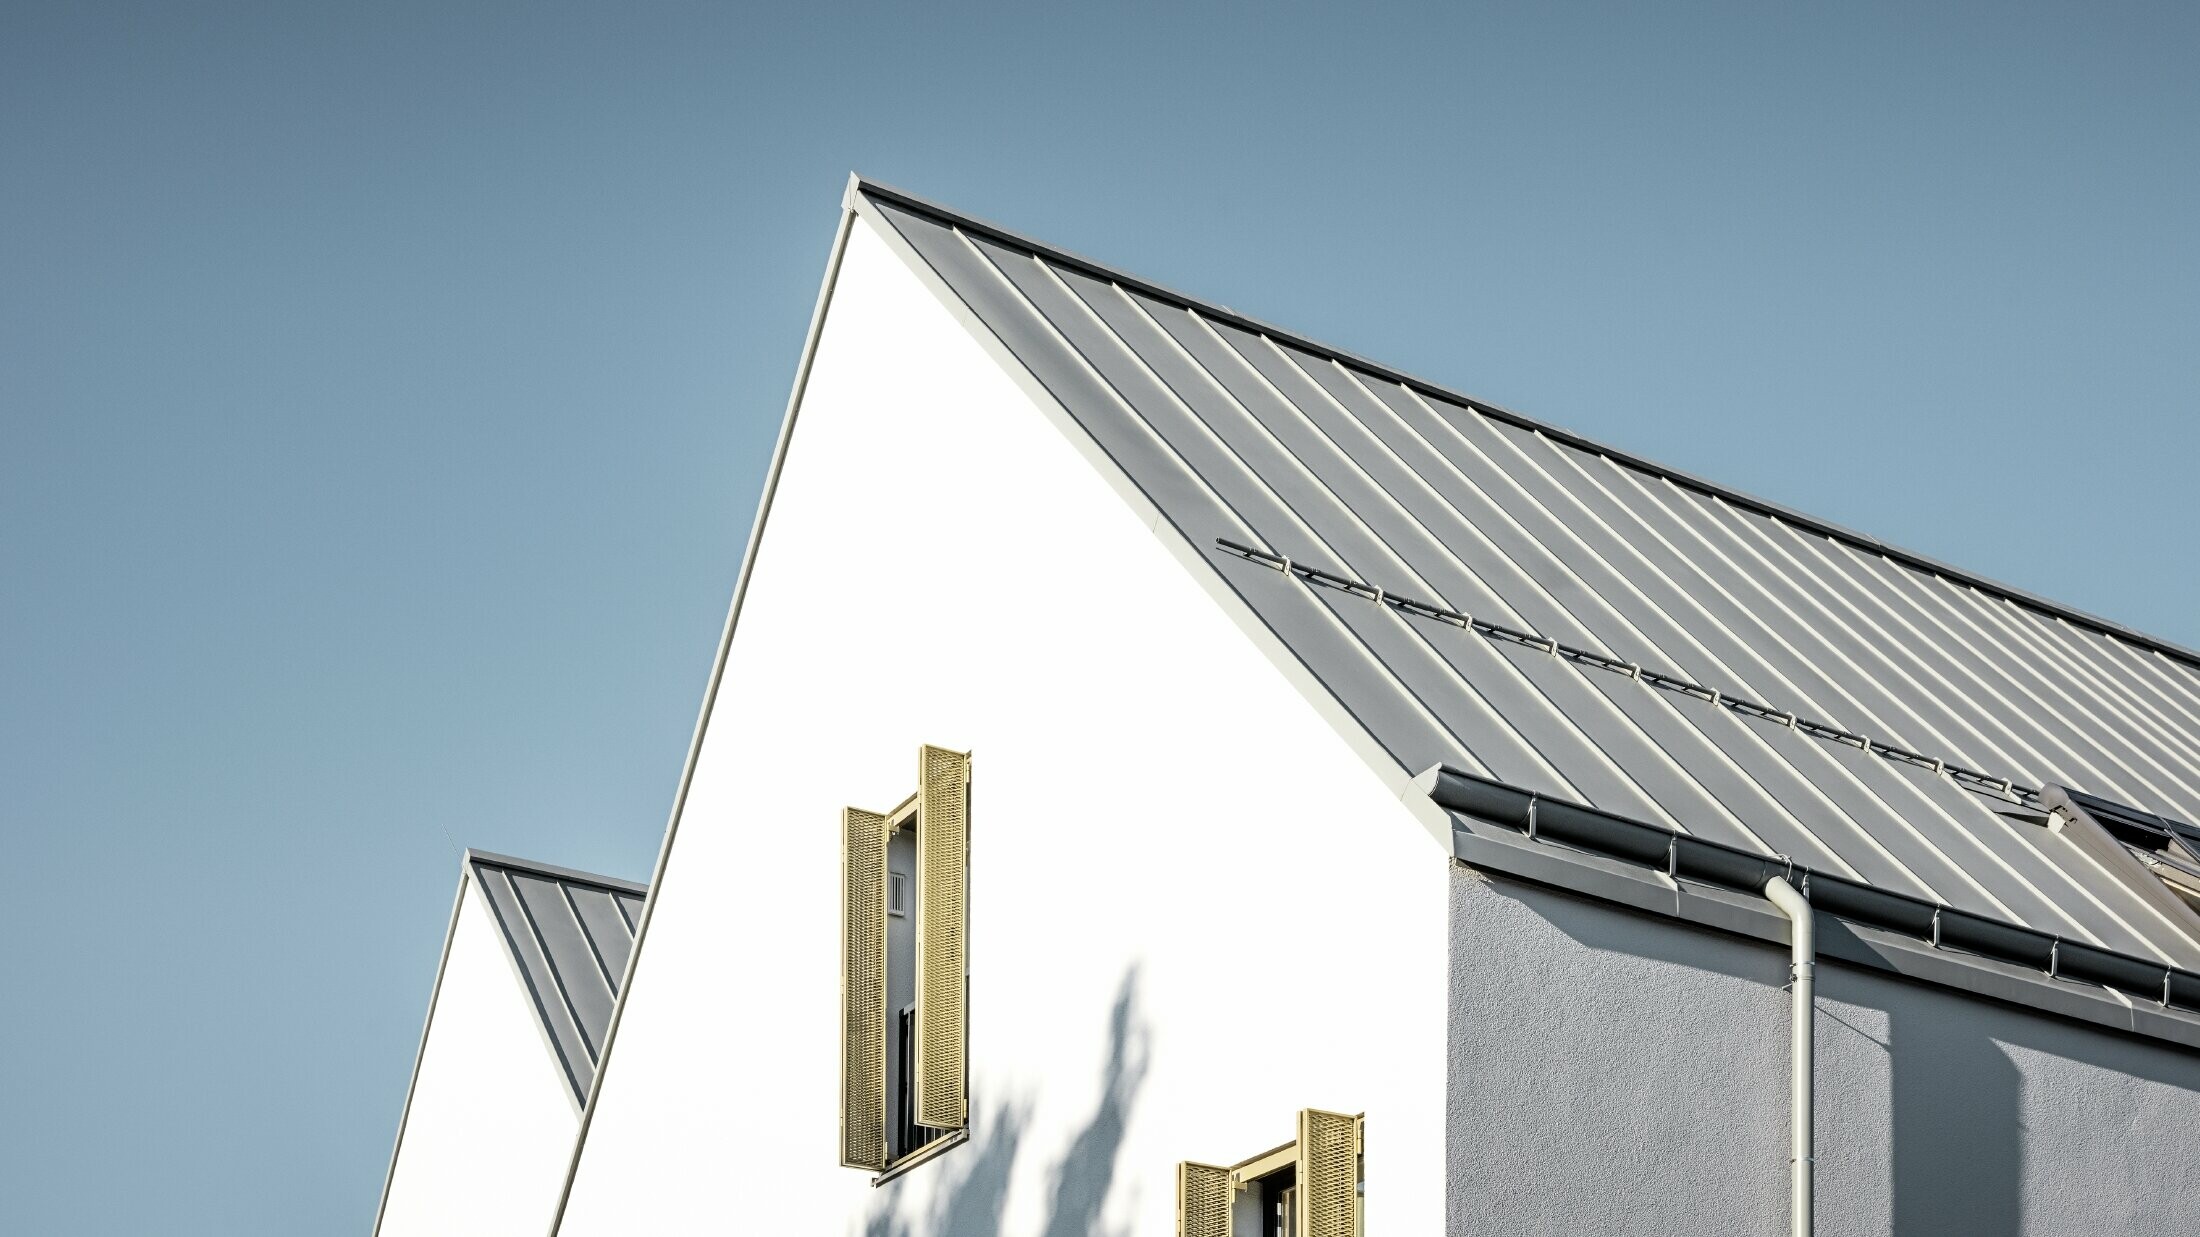 Dvostrešni krov bez strehe, pokriven sustavom PREFALZ u P.10 cink sivoj boji s PREFA ležećim žlijebom